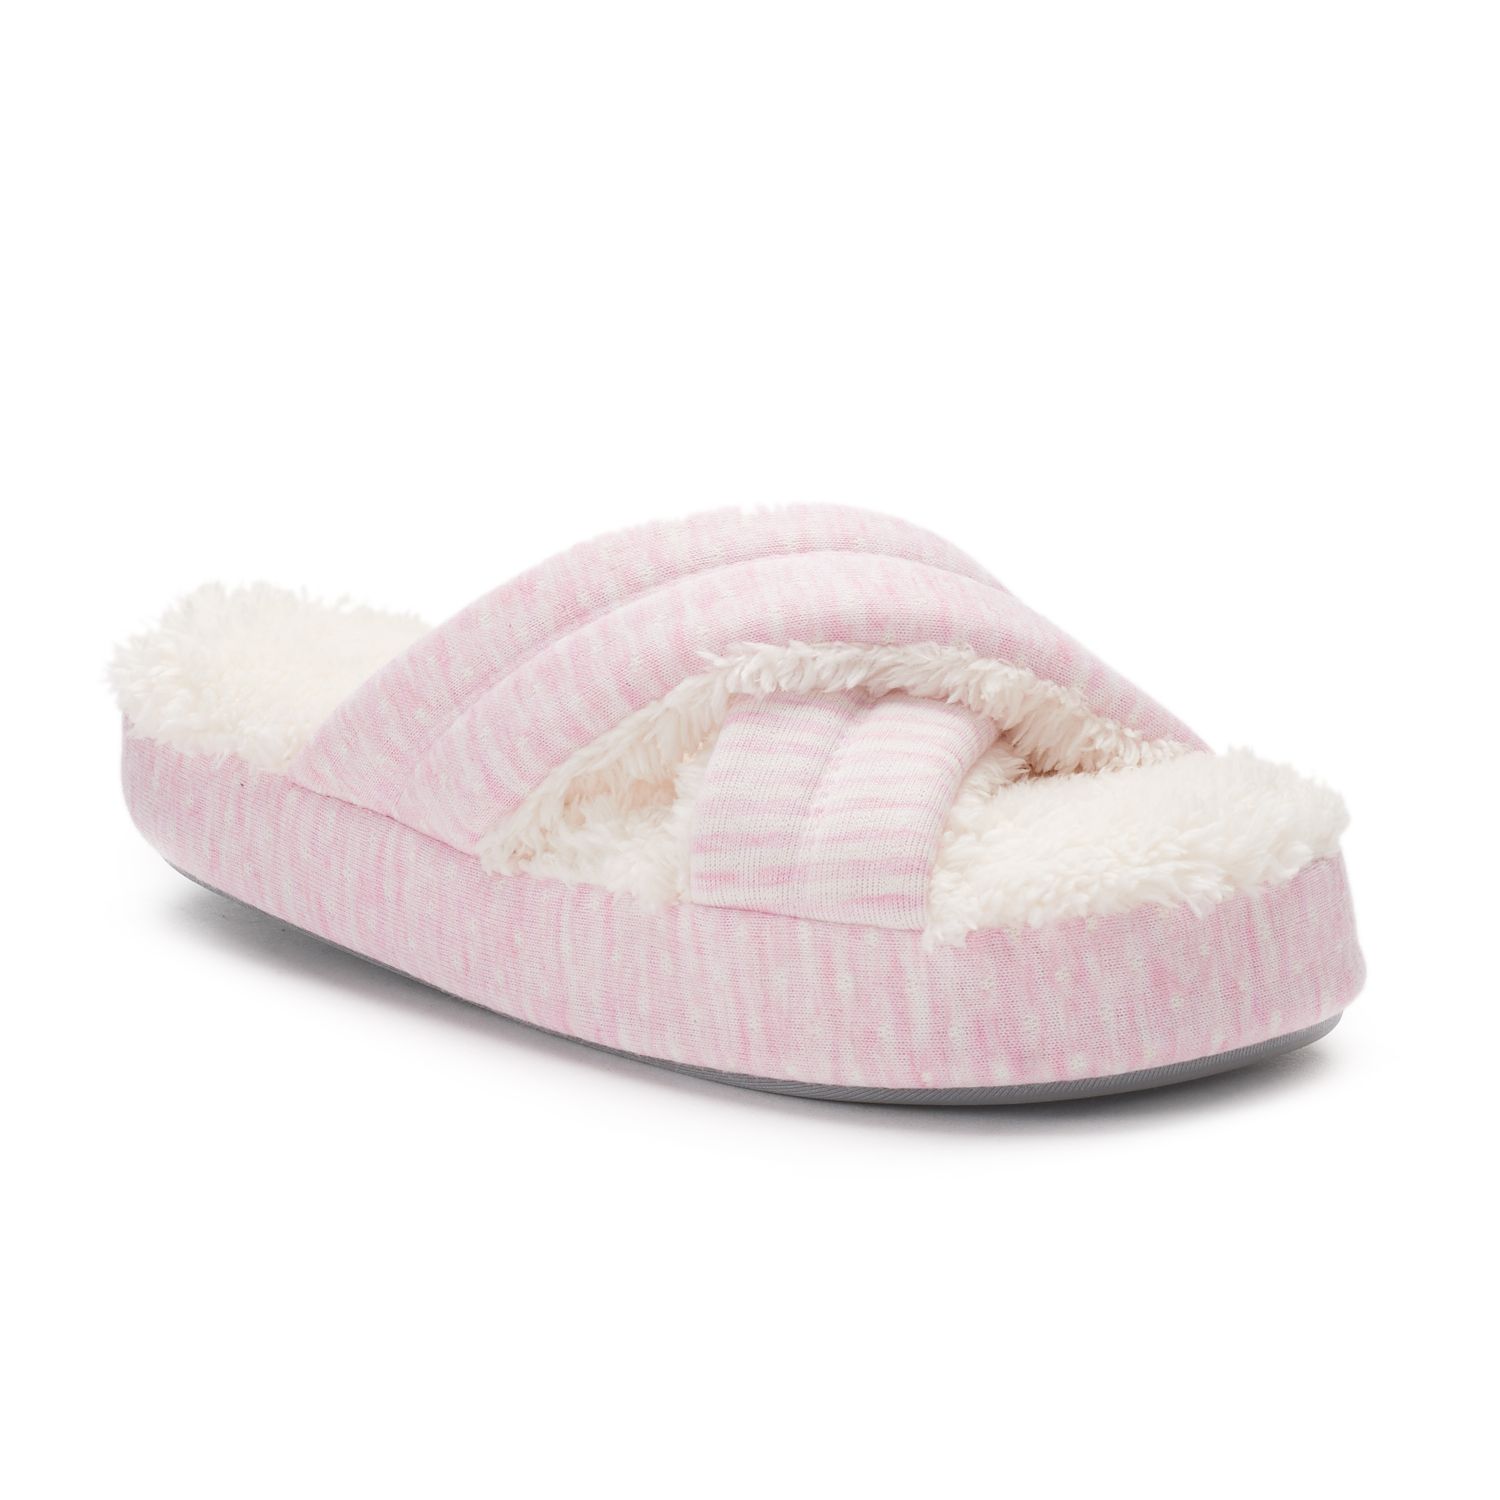 foam slippers